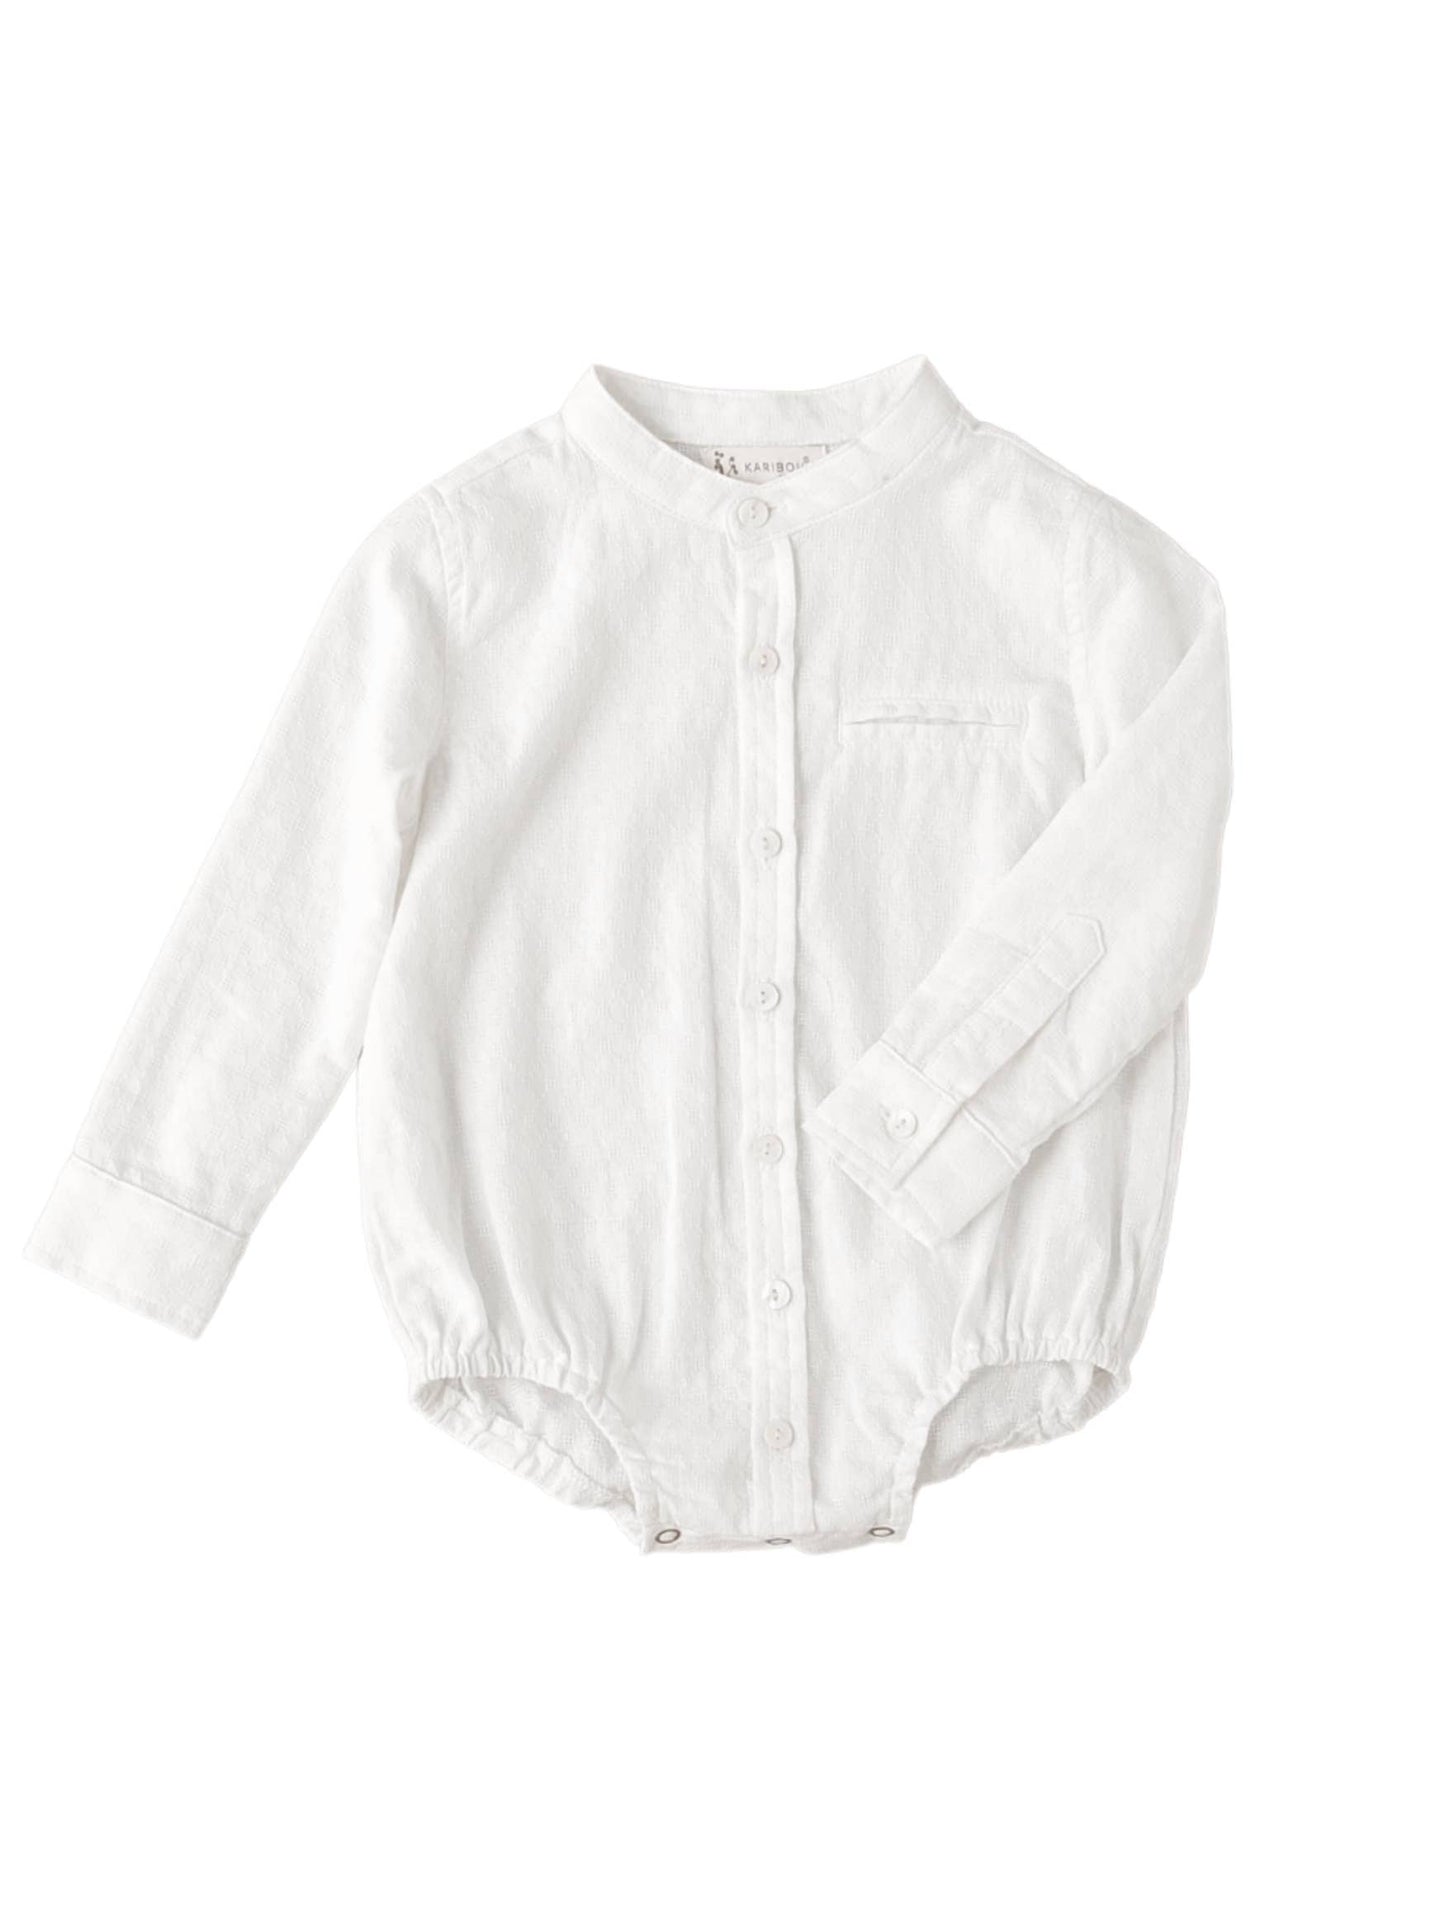 Thomas Textured Cotton Shirt Romper - White